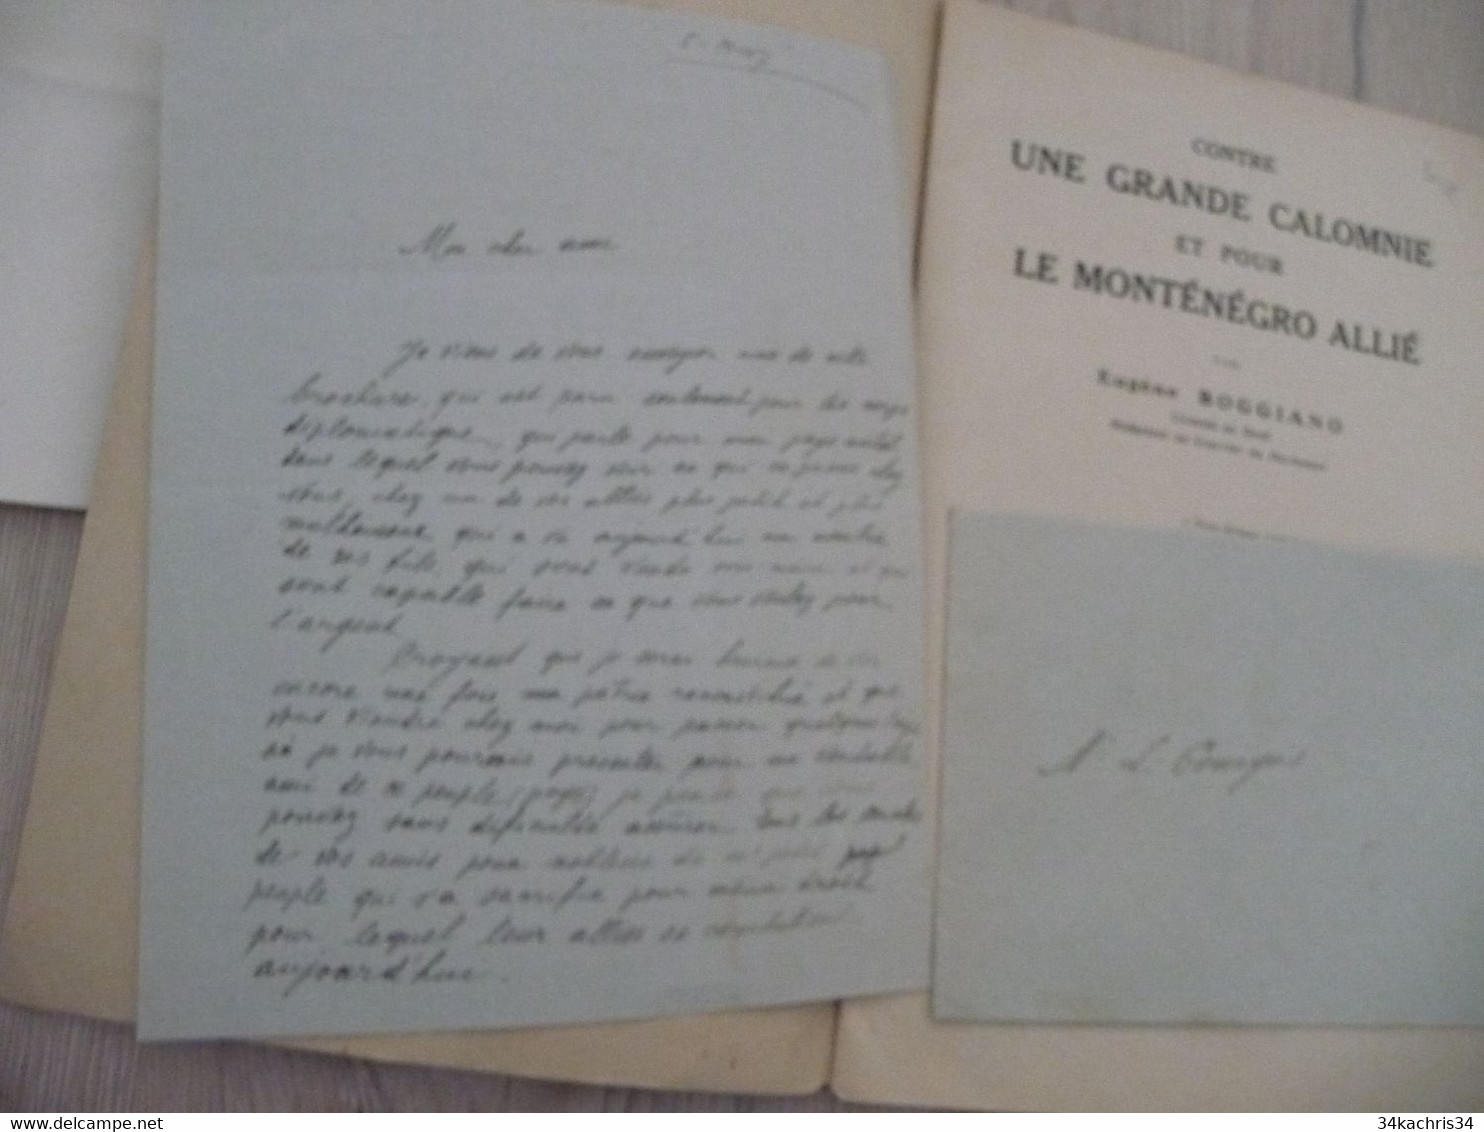 1917 Réservée Au Corps Diplomatique + Lettre Manuscrit Explicatif Boggiano Contre Une Grande Calomnie Pour Le Monténégro - Documentos